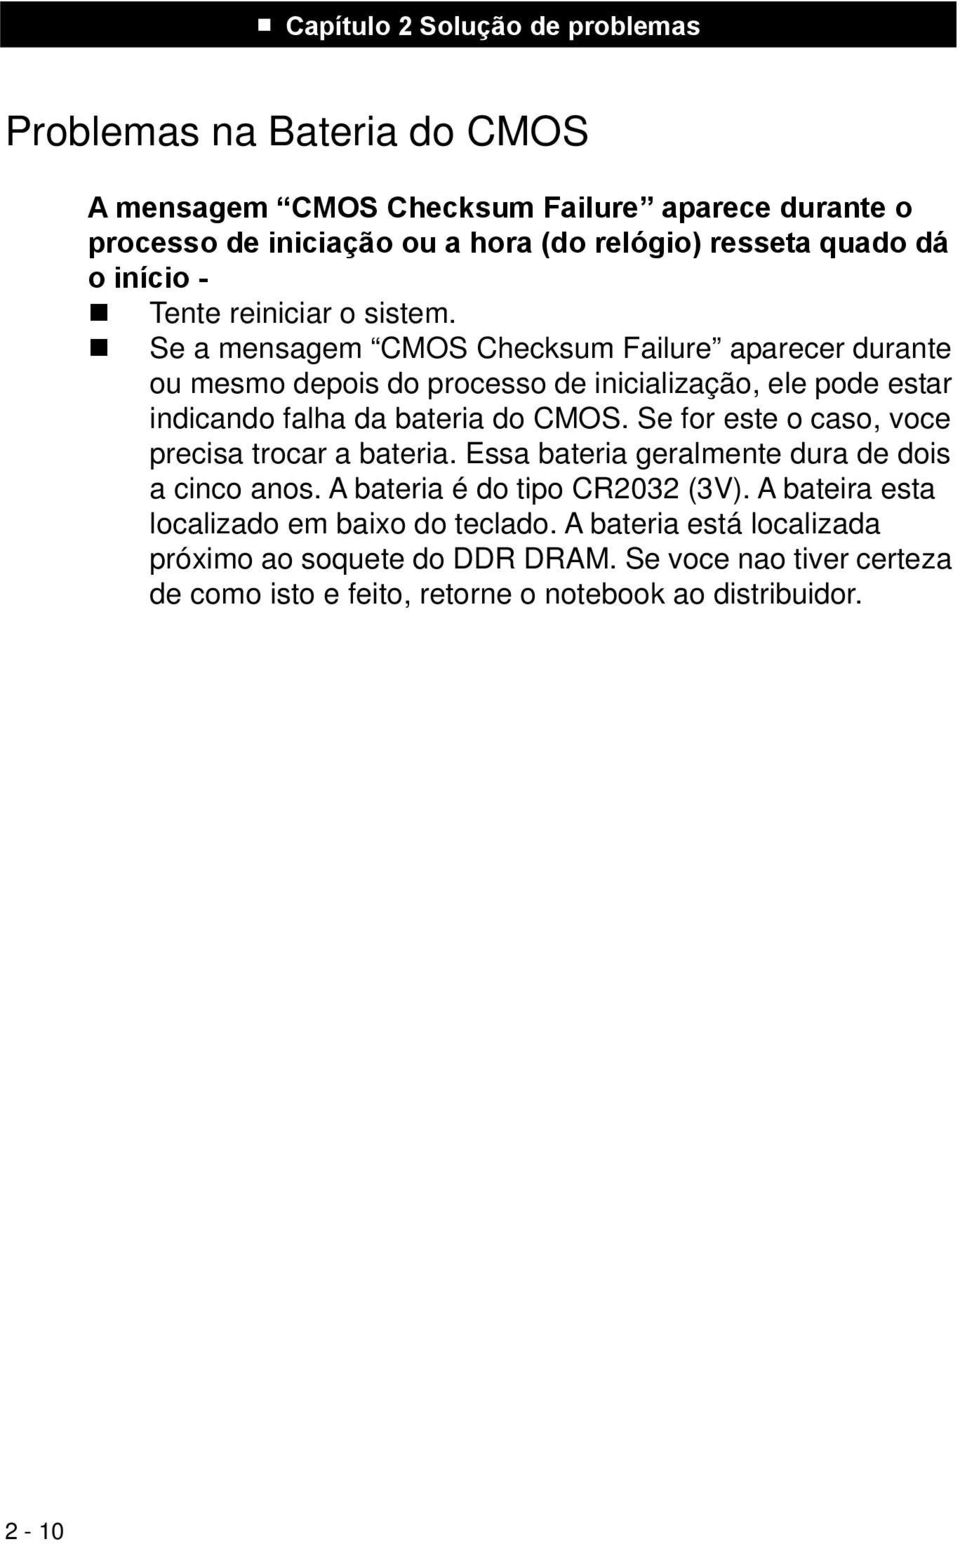 Se a mensagem CMOS Checksum Failure aparecer durante ou mesmo depois do processo de inicialização, ele pode estar indicando falha da bateria do CMOS.